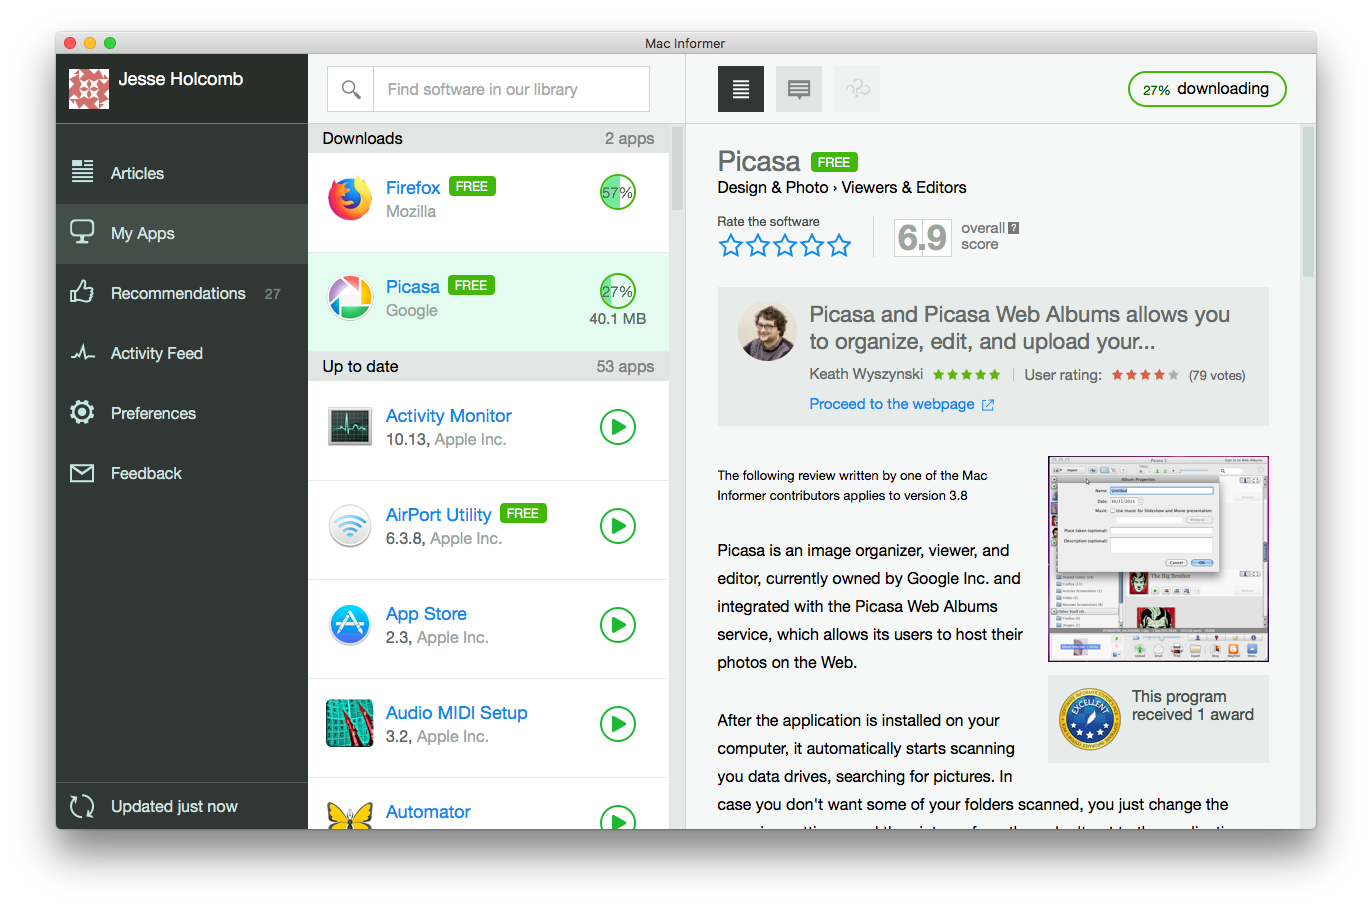 Mac Informer 0.6 : Read an app review